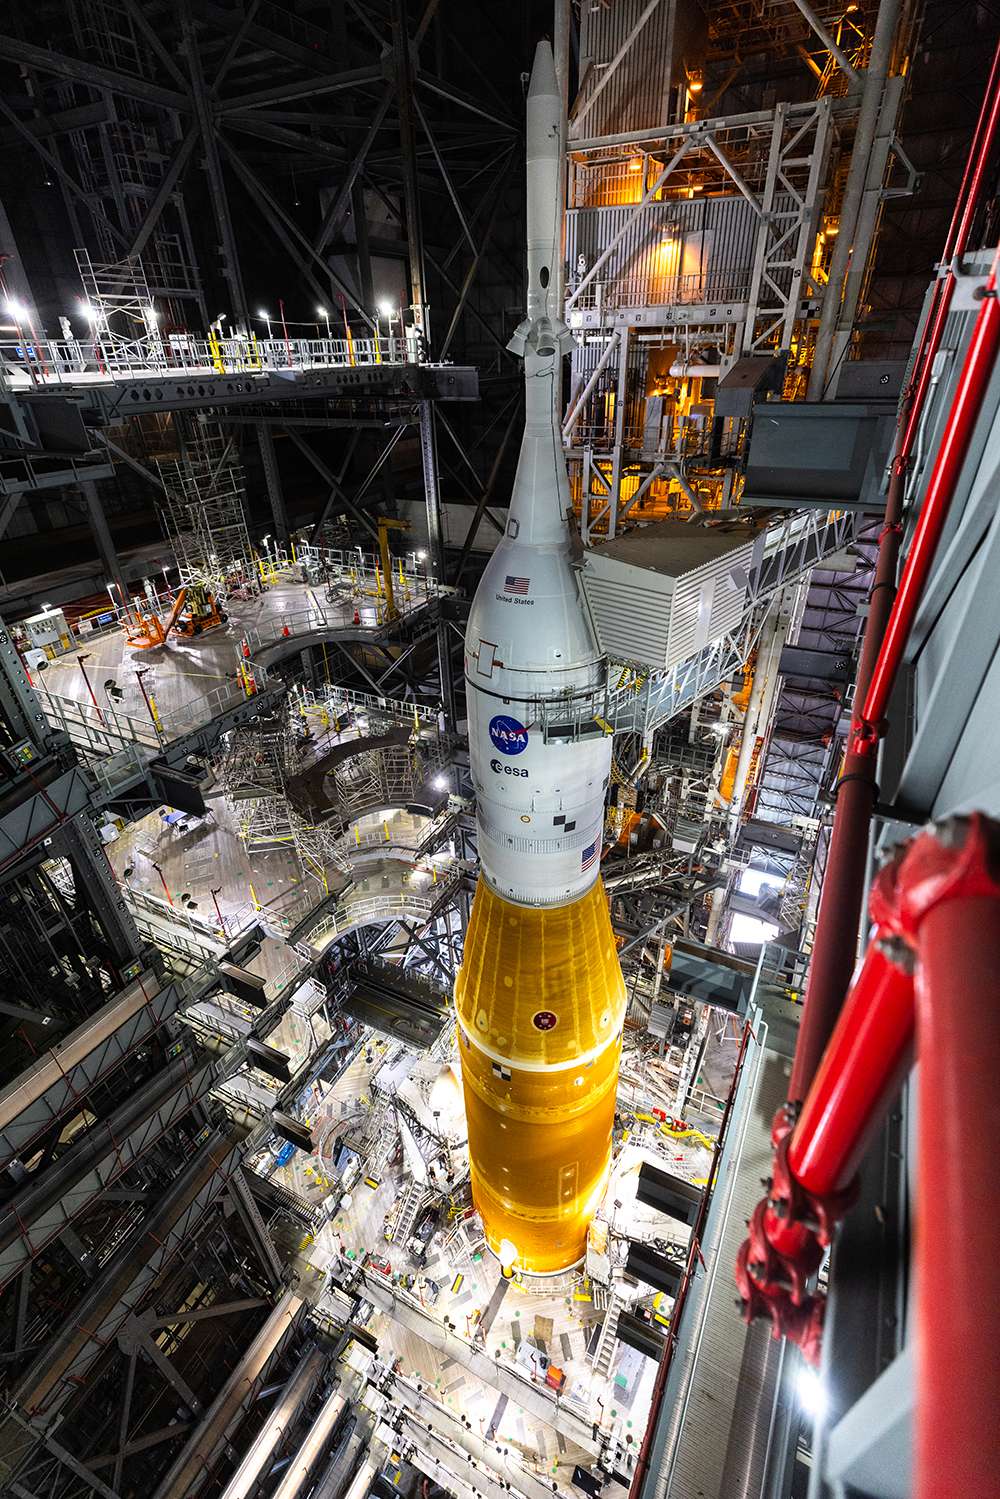 Le lanceur SLS dans le VAB (<em>Vehicle Assembly Building</em>) et sa multitude de passerelles qui permettent d'accéder aux éléments du lanceur. © Nasa